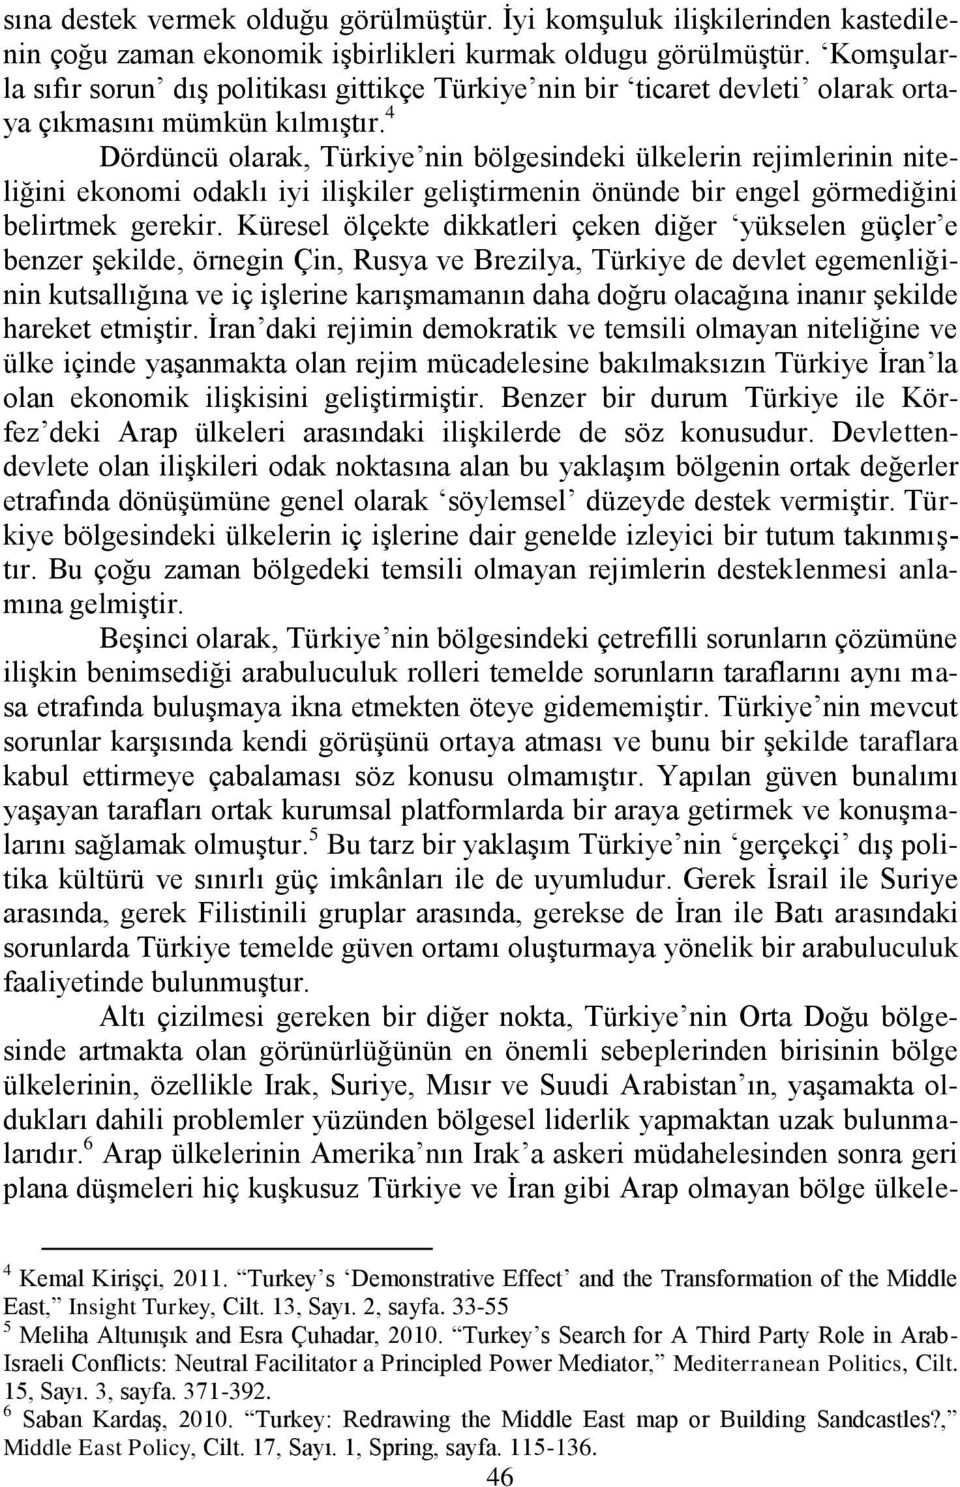 4 Dördüncü olarak, Türkiye nin bölgesindeki ülkelerin rejimlerinin niteliğini ekonomi odaklı iyi iliģkiler geliģtirmenin önünde bir engel görmediğini belirtmek gerekir.